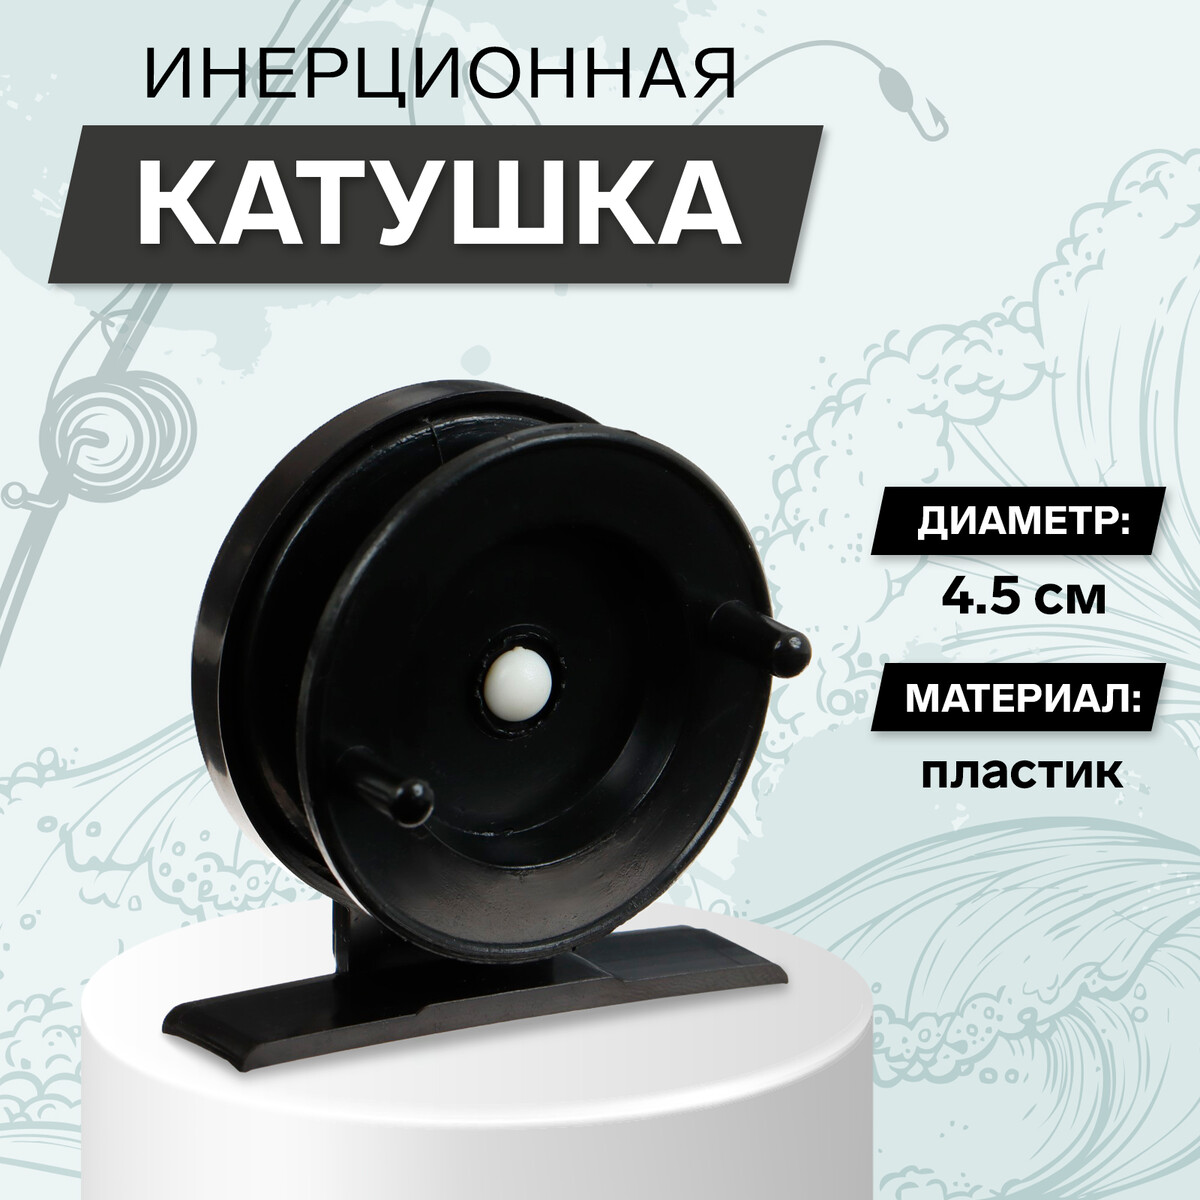 Катушка инерционная пластиковая, диаметр 4.5 см, цвет черный, 501 катушка св140 1 подшипник 5 2 1 пластиковая шпуля